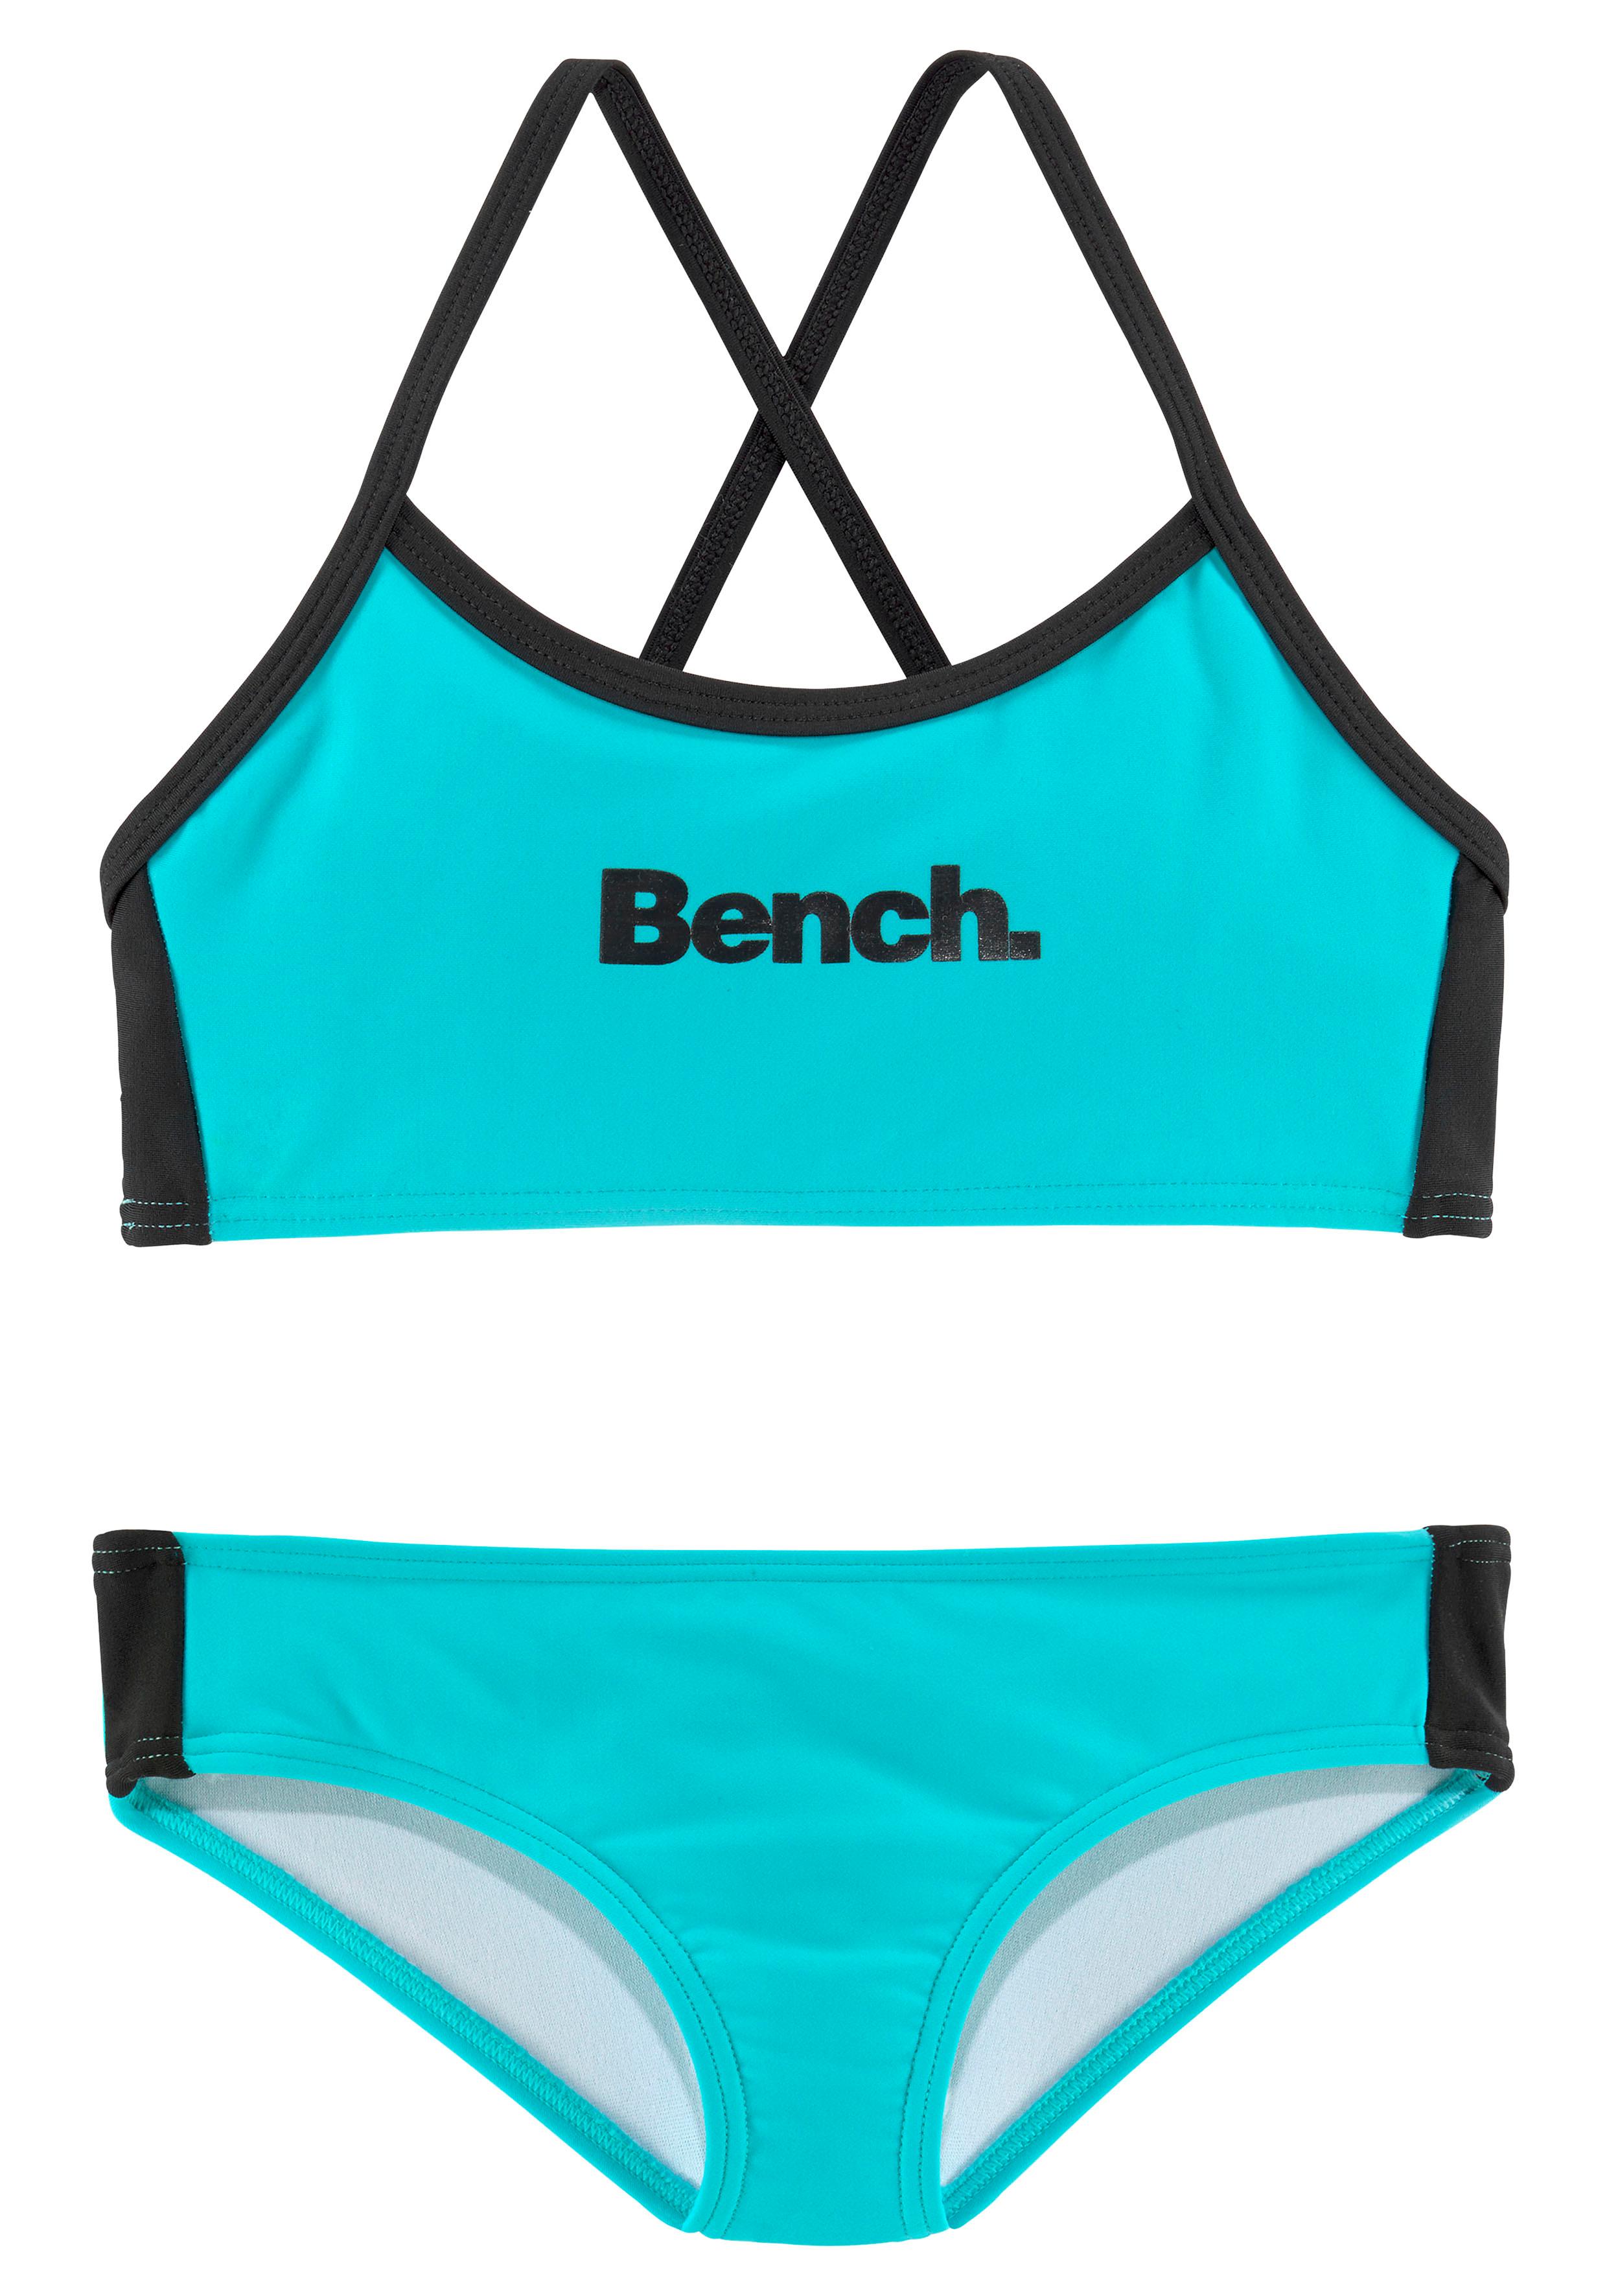 Bench. Triangel-Bikini, mit Logoprint bei Top und an Hose